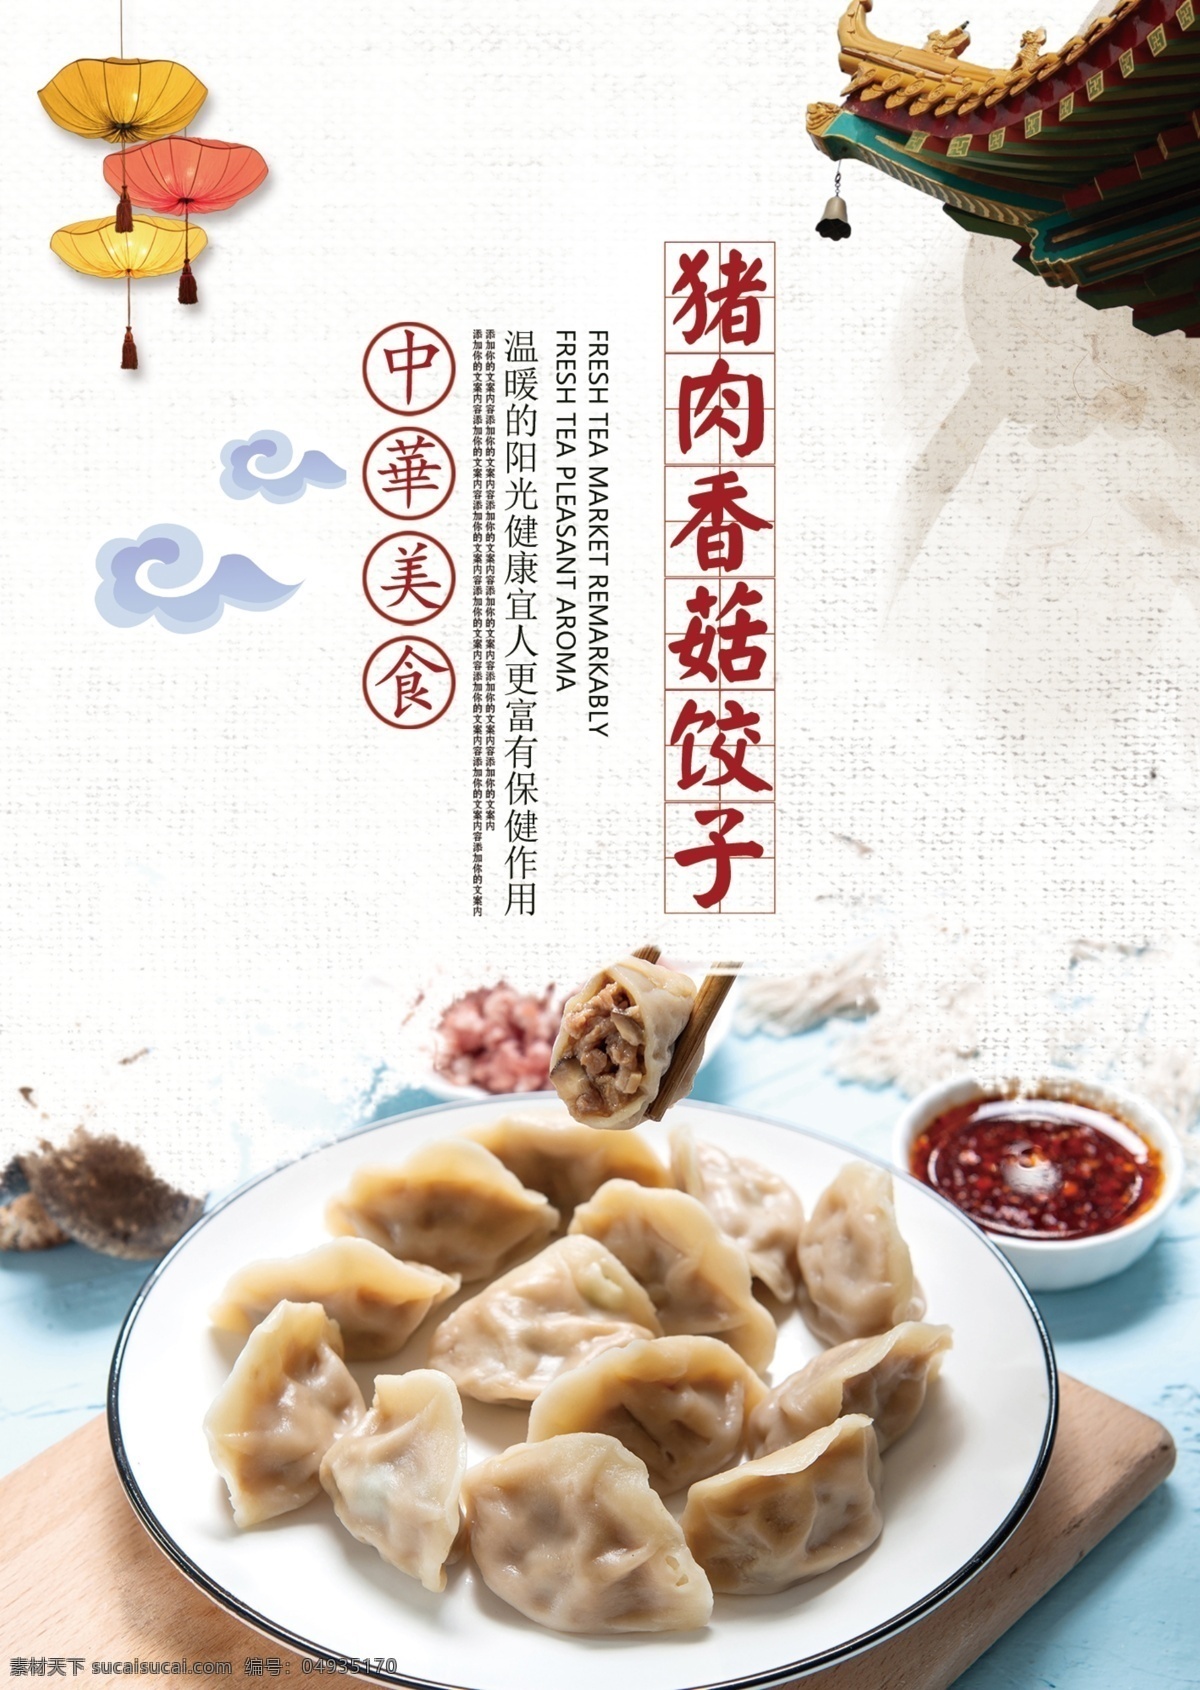 饺子馆宣传图 饺子 香菇猪肉馅 分层 饺子图 宣传 创意 中国风 饺子馆 房角 灯笼 美食 传统